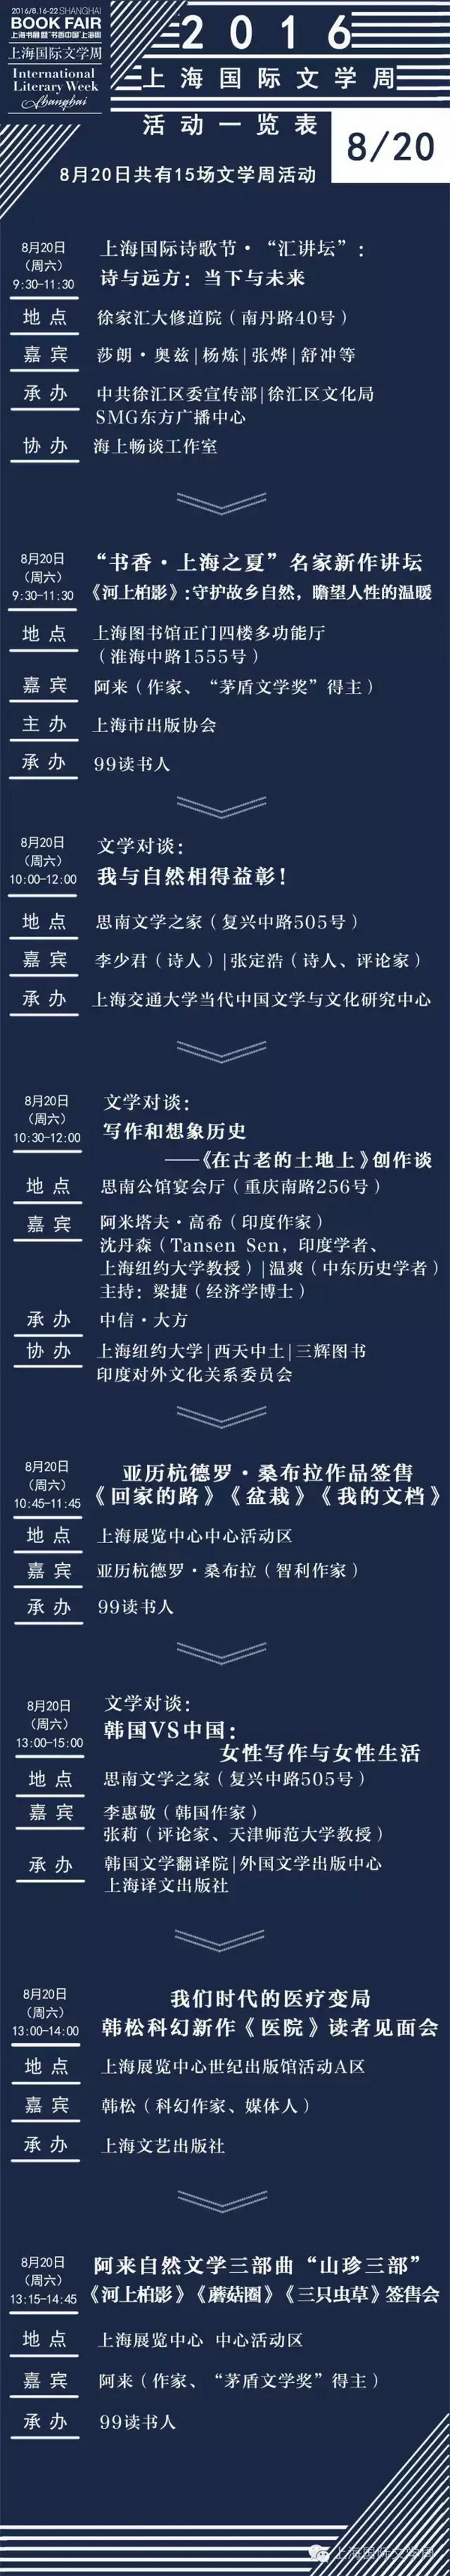 2016上海国际文学周活动全预告